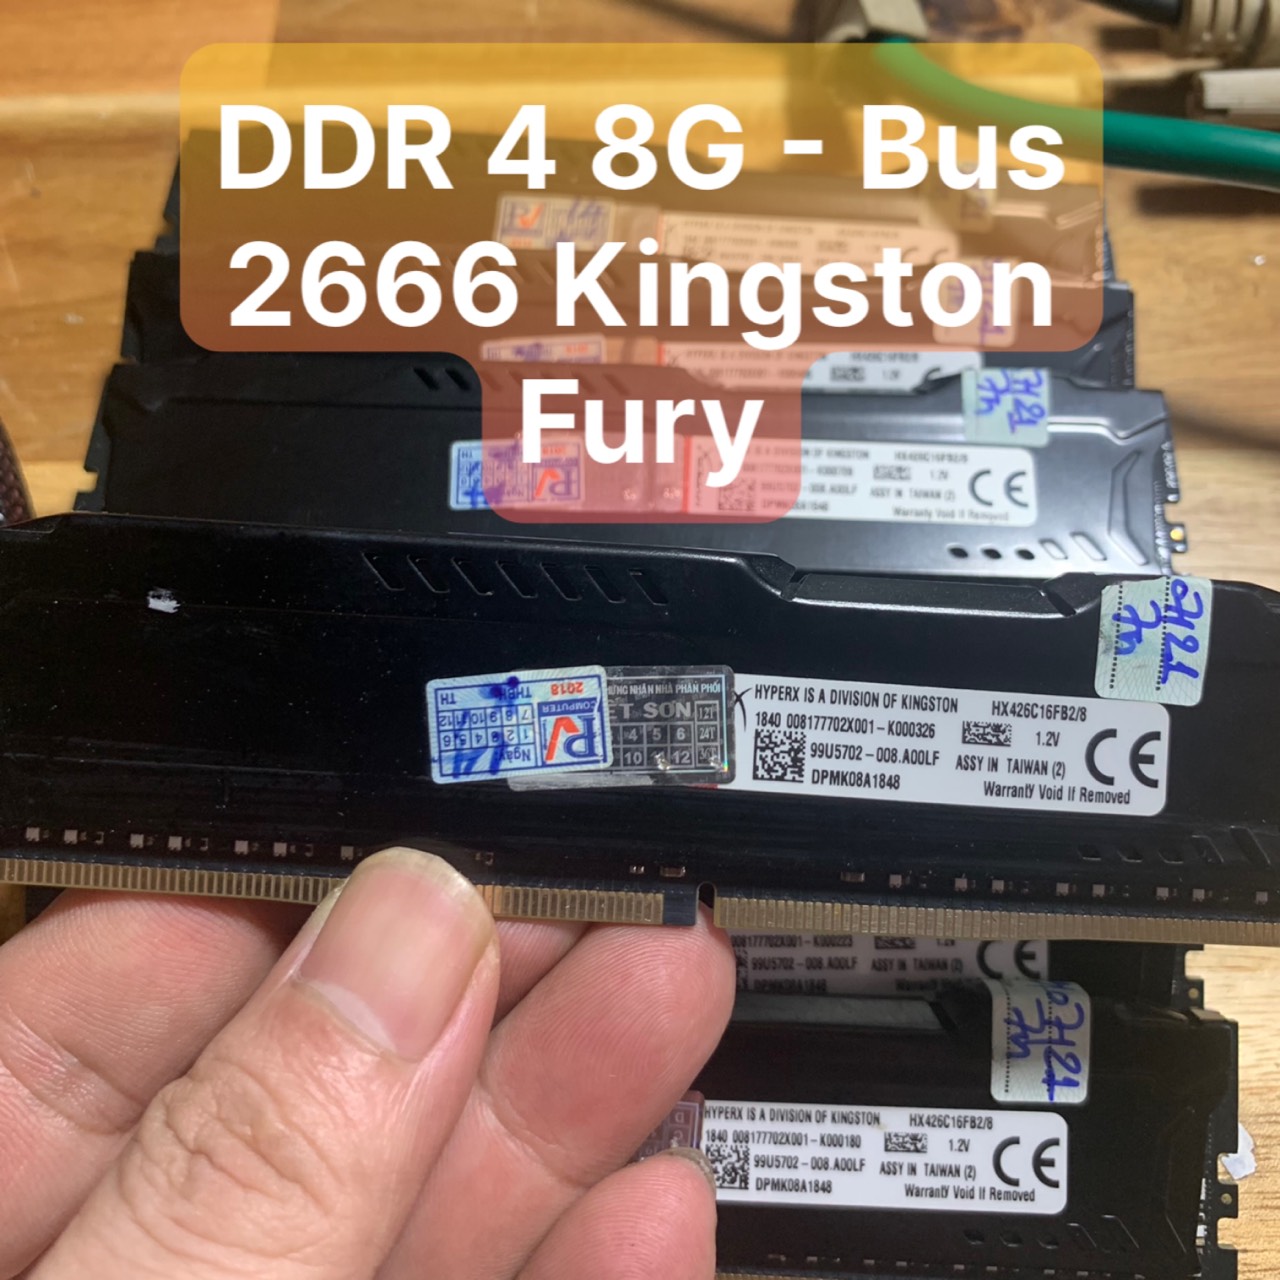 Ram DDR4  8G - Bus 2666 Hiệu Kington Fury Tản Nhiệt, Chính Hãng - Vi Tính Bắc Hải